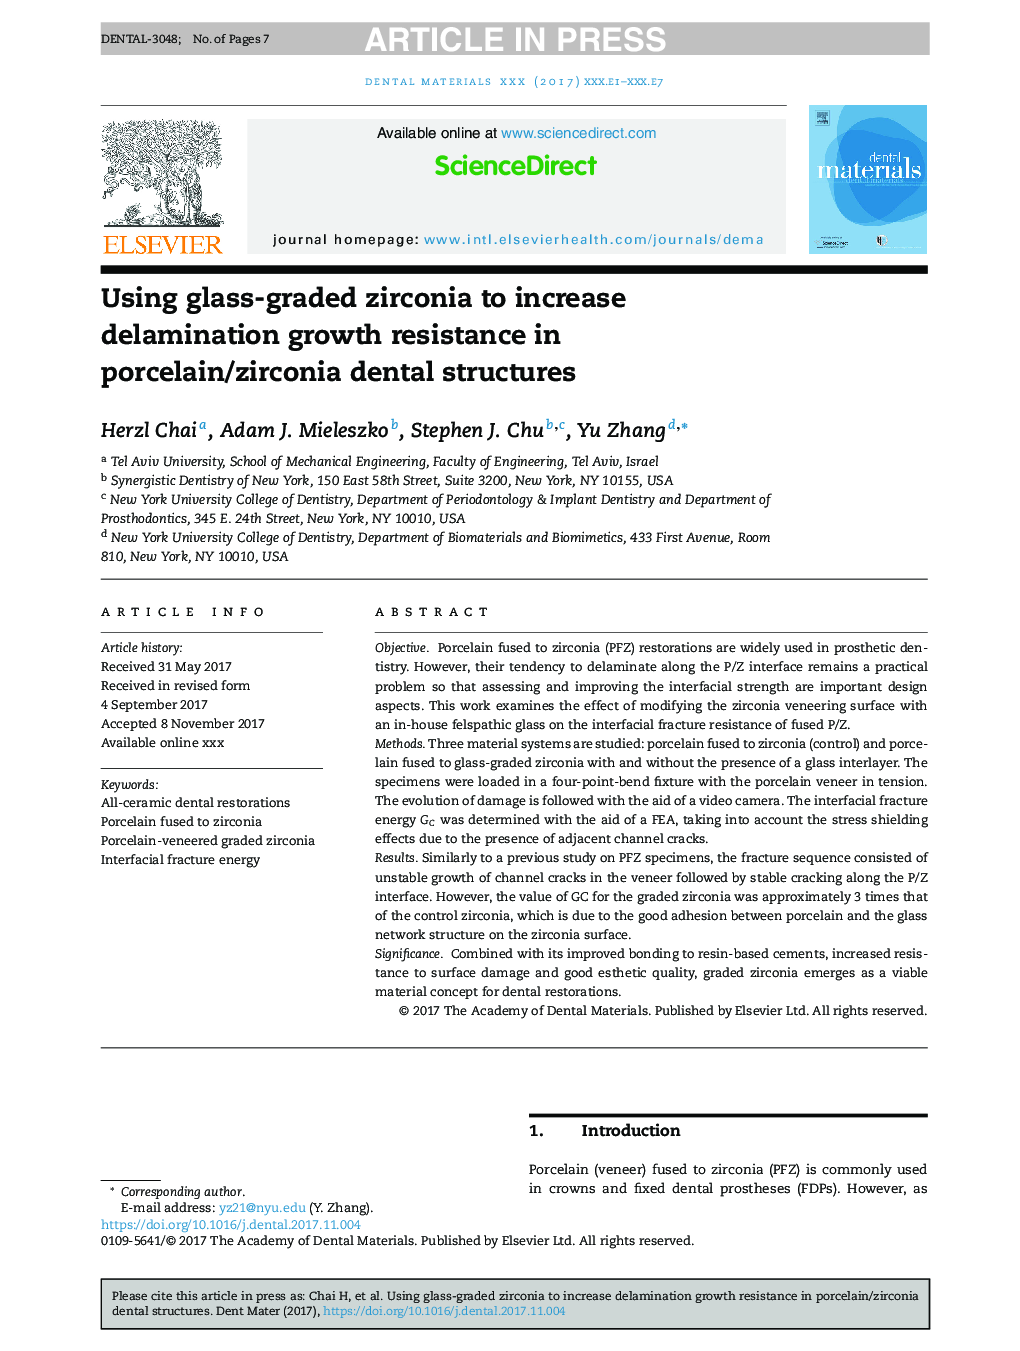 با استفاده از زیرکونیا درجه شیشه ای به منظور افزایش مقاومت در برابر رشد سلولی در ساختارهای دندانپزشکی پرسلن / زیرکونیا 